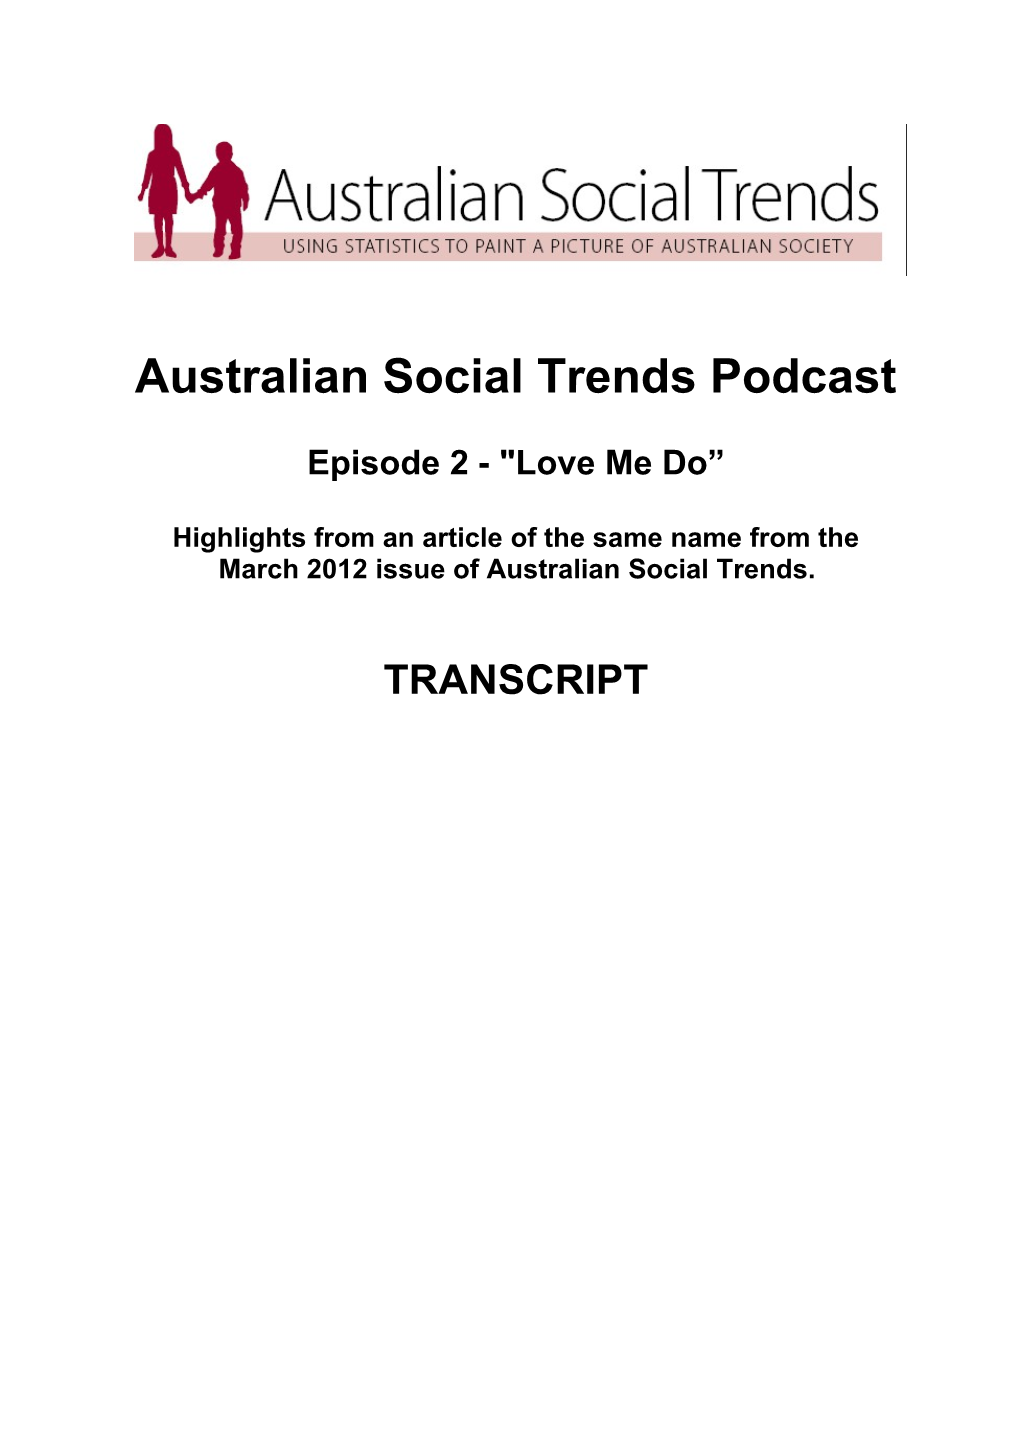 Australian Social Trends Podcast